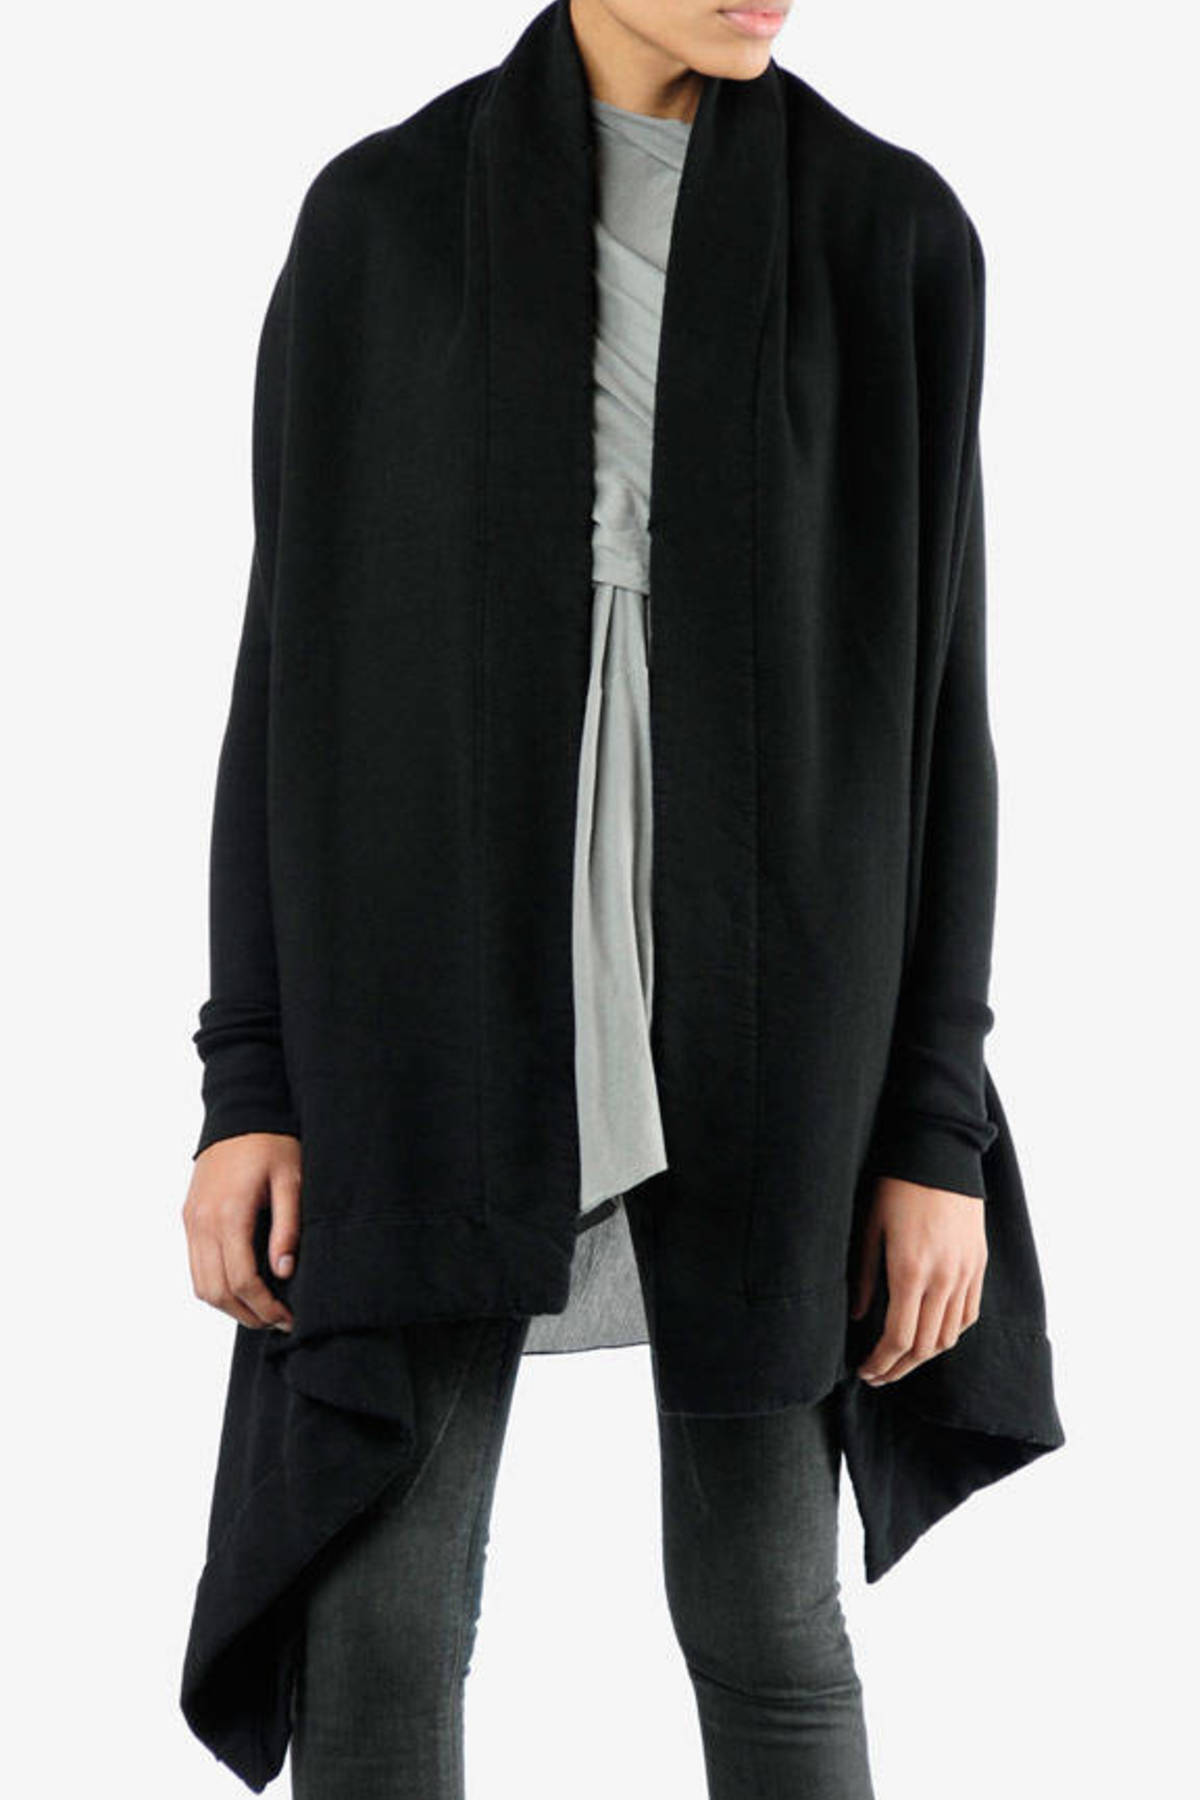 Long Sleeve Wrap in Black - $363 | Tobi US